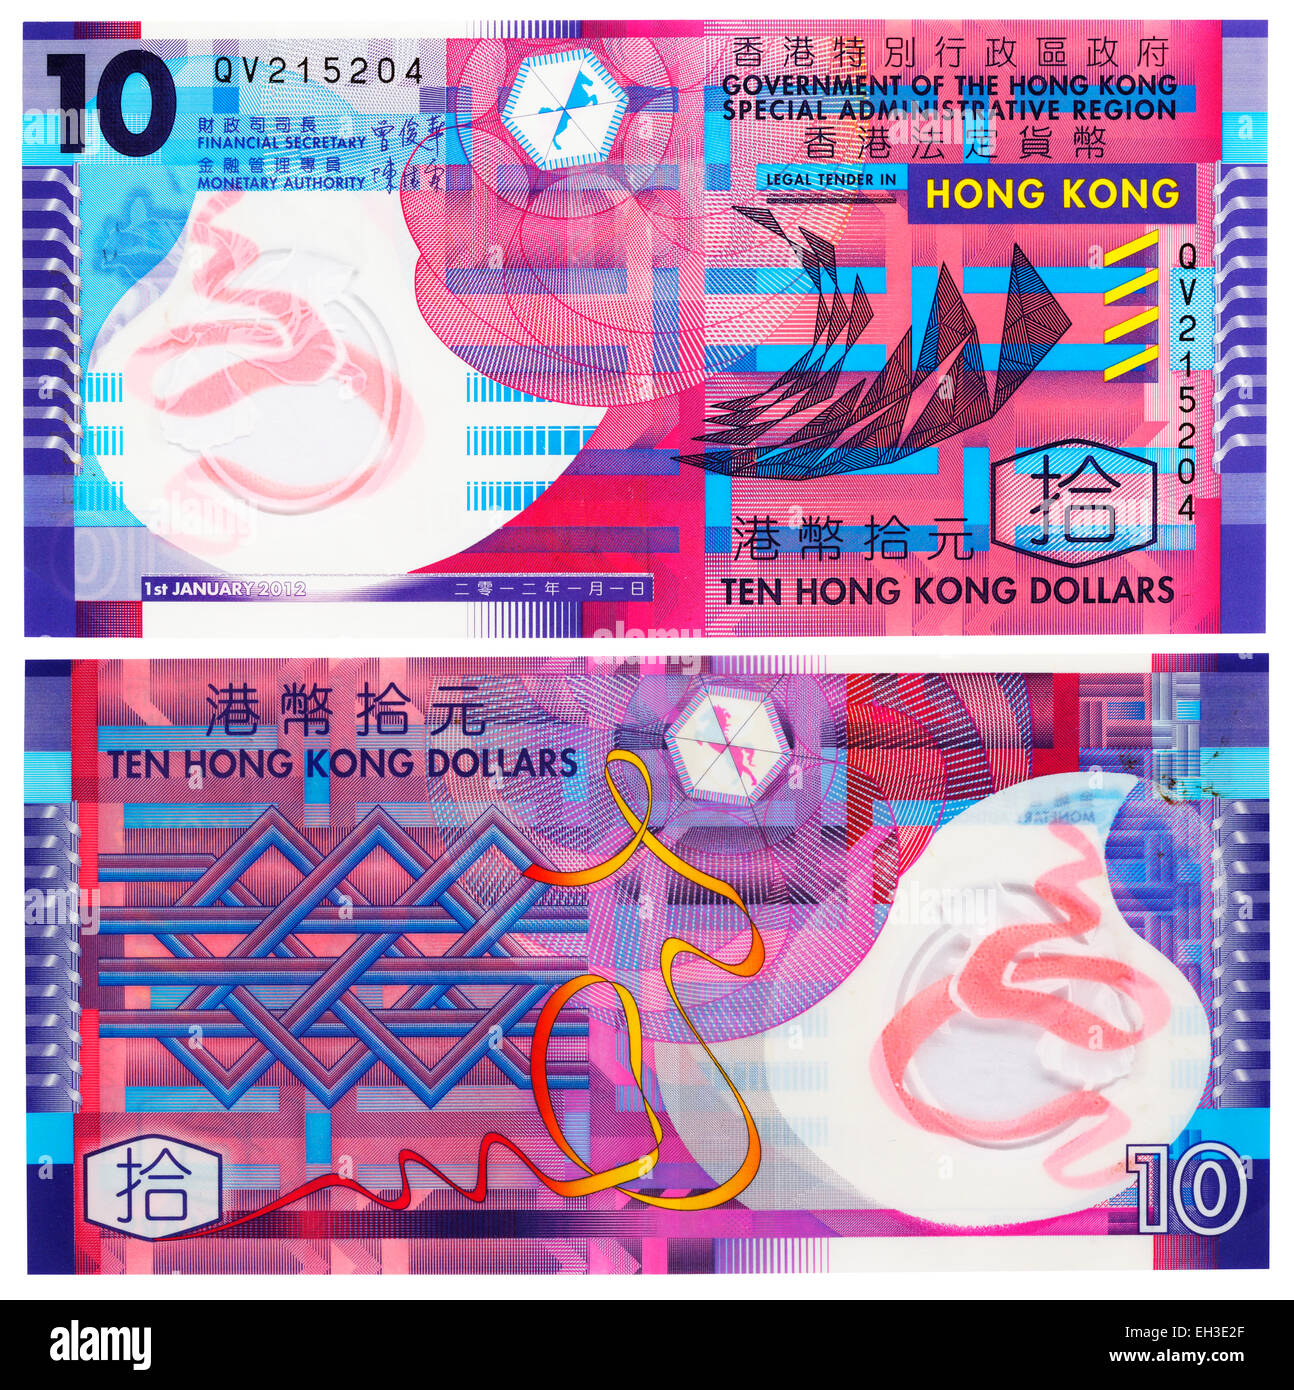 10 dollars banknote, Hong Kong, 2012 Stock Photo